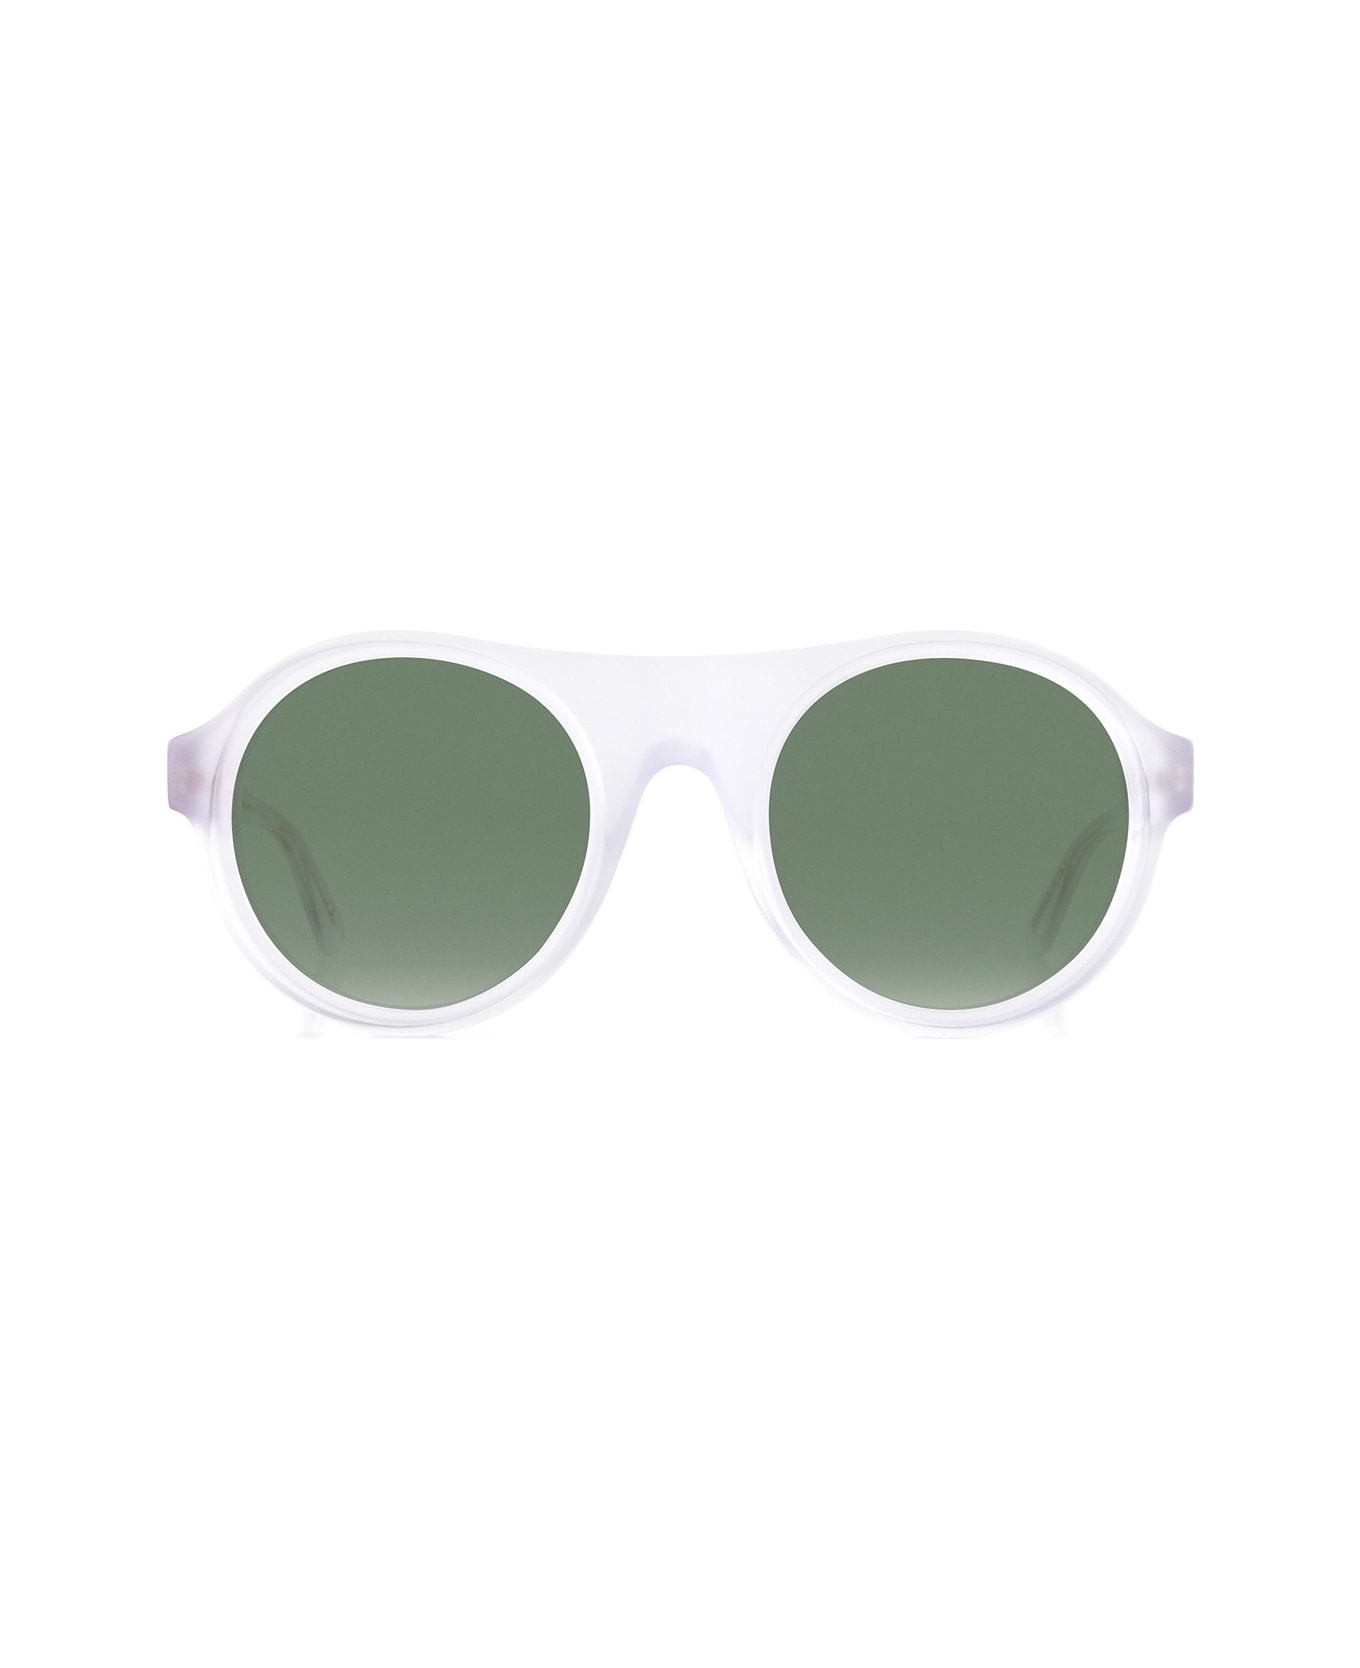 Robert La Roche Rlr S300 Sunglasses - Bianco